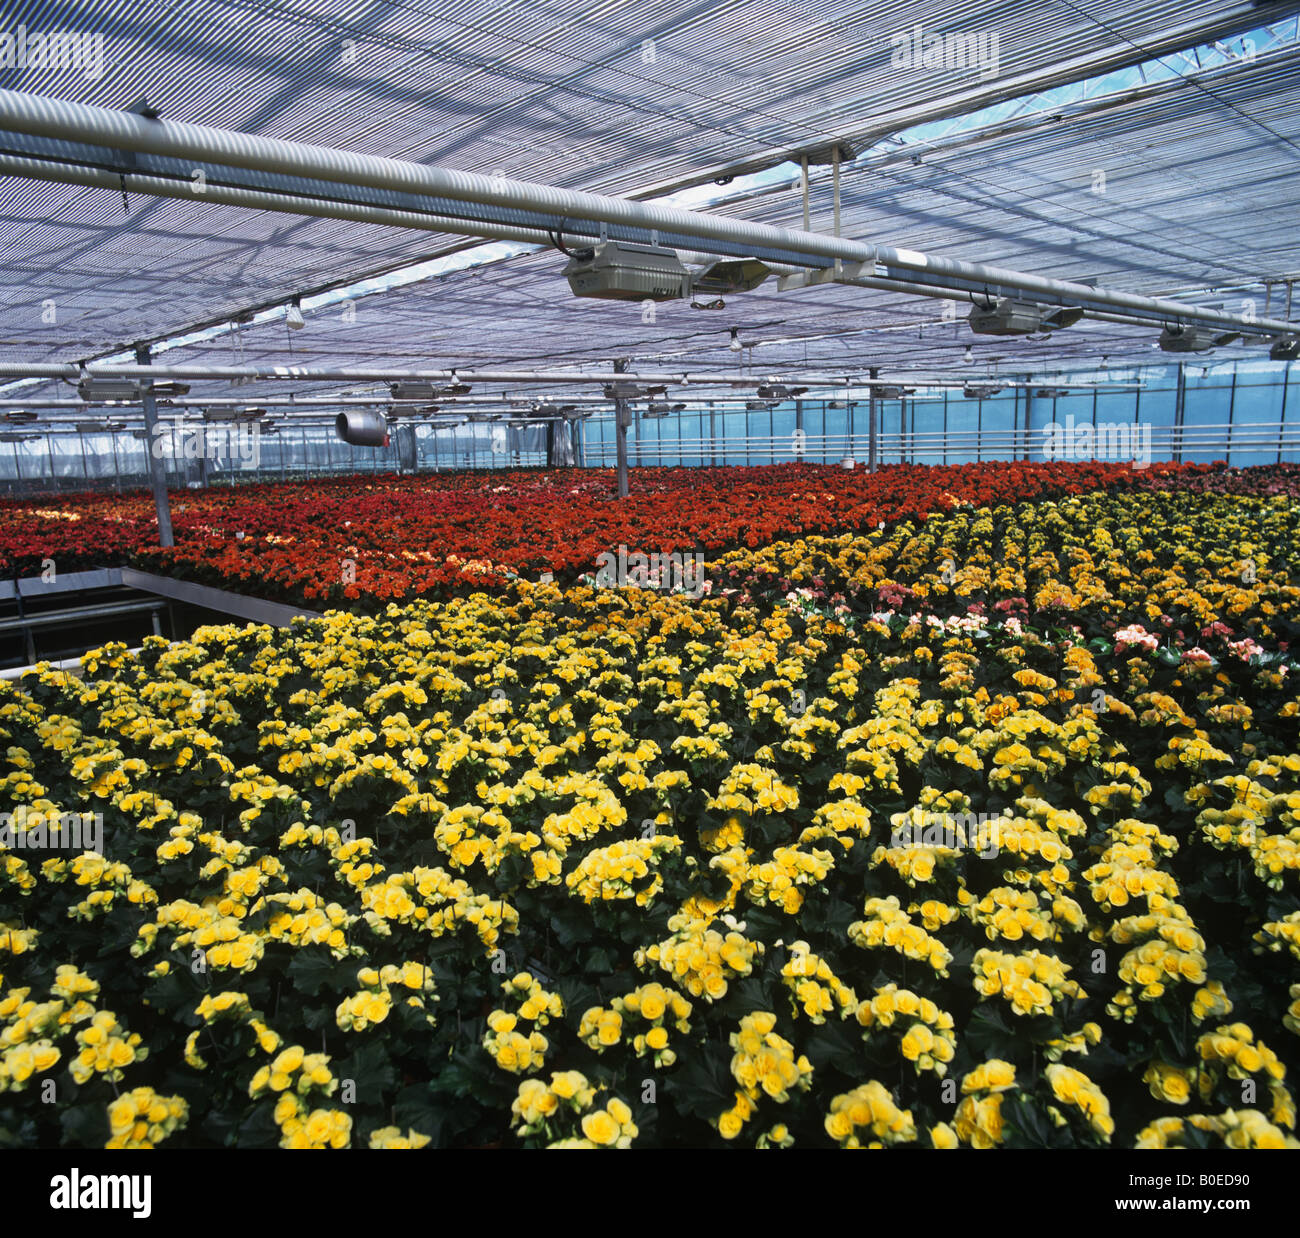 Allevamento di occupato lizzie piante in vendita nei negozi in una grande serra vivaio Foto Stock